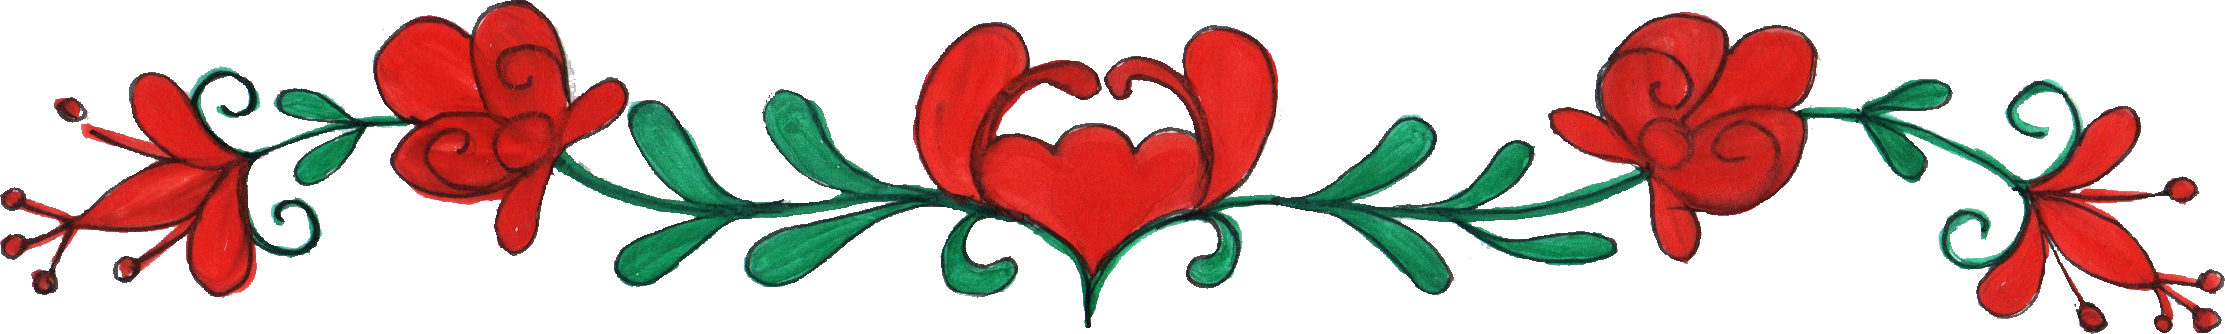 Red Heart Floral Border Design PNG